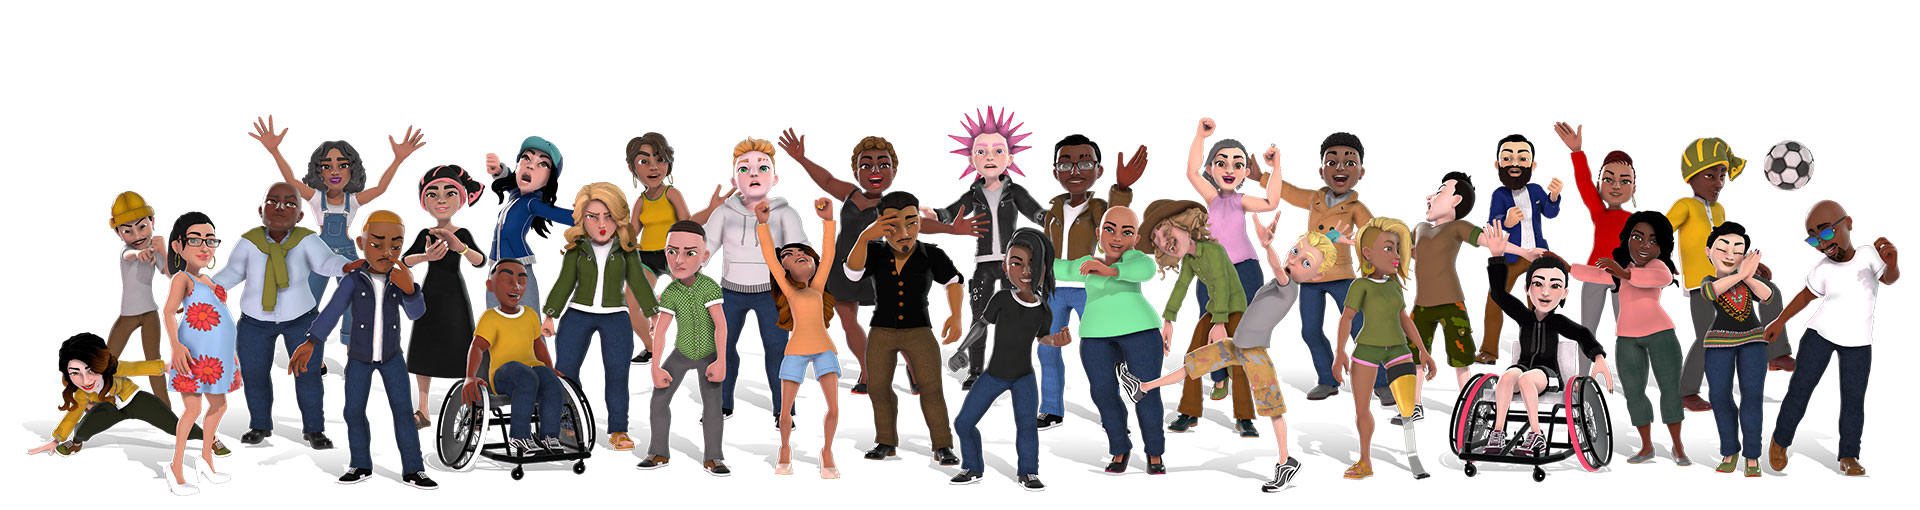 Avatars Xbox présentant un groupe diversifié de personnes dans des tenues différentes